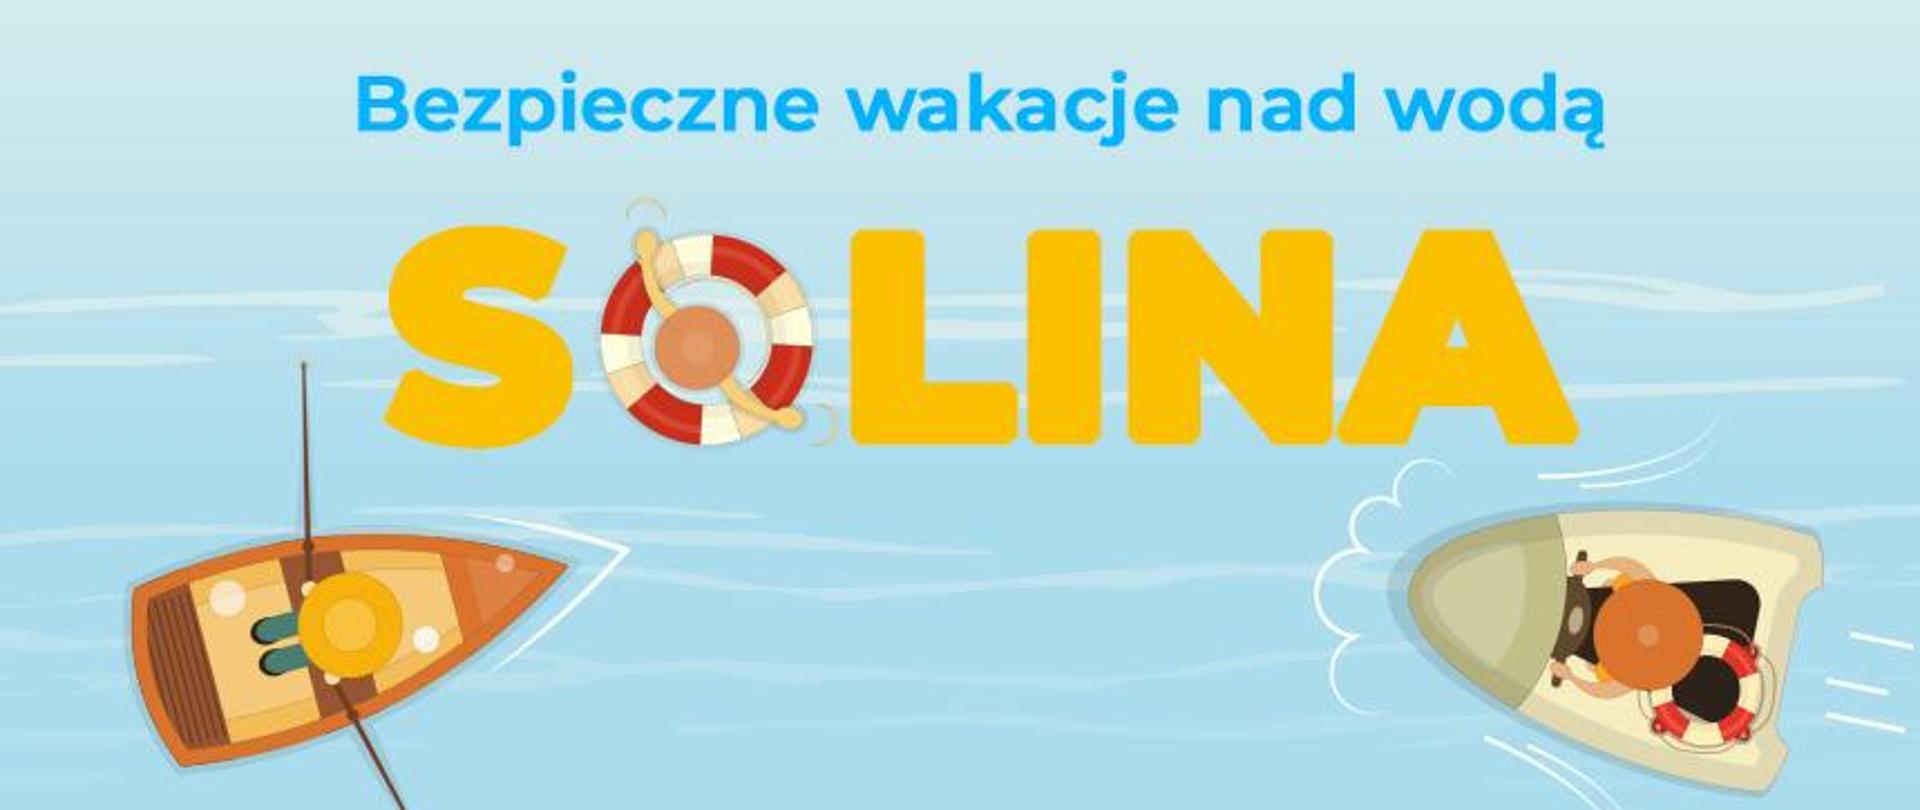 na niebieskim tle napis "Bezpieczne wakacje nad wodą" i "Solina". Po przeciwnych stronach dwie łódki